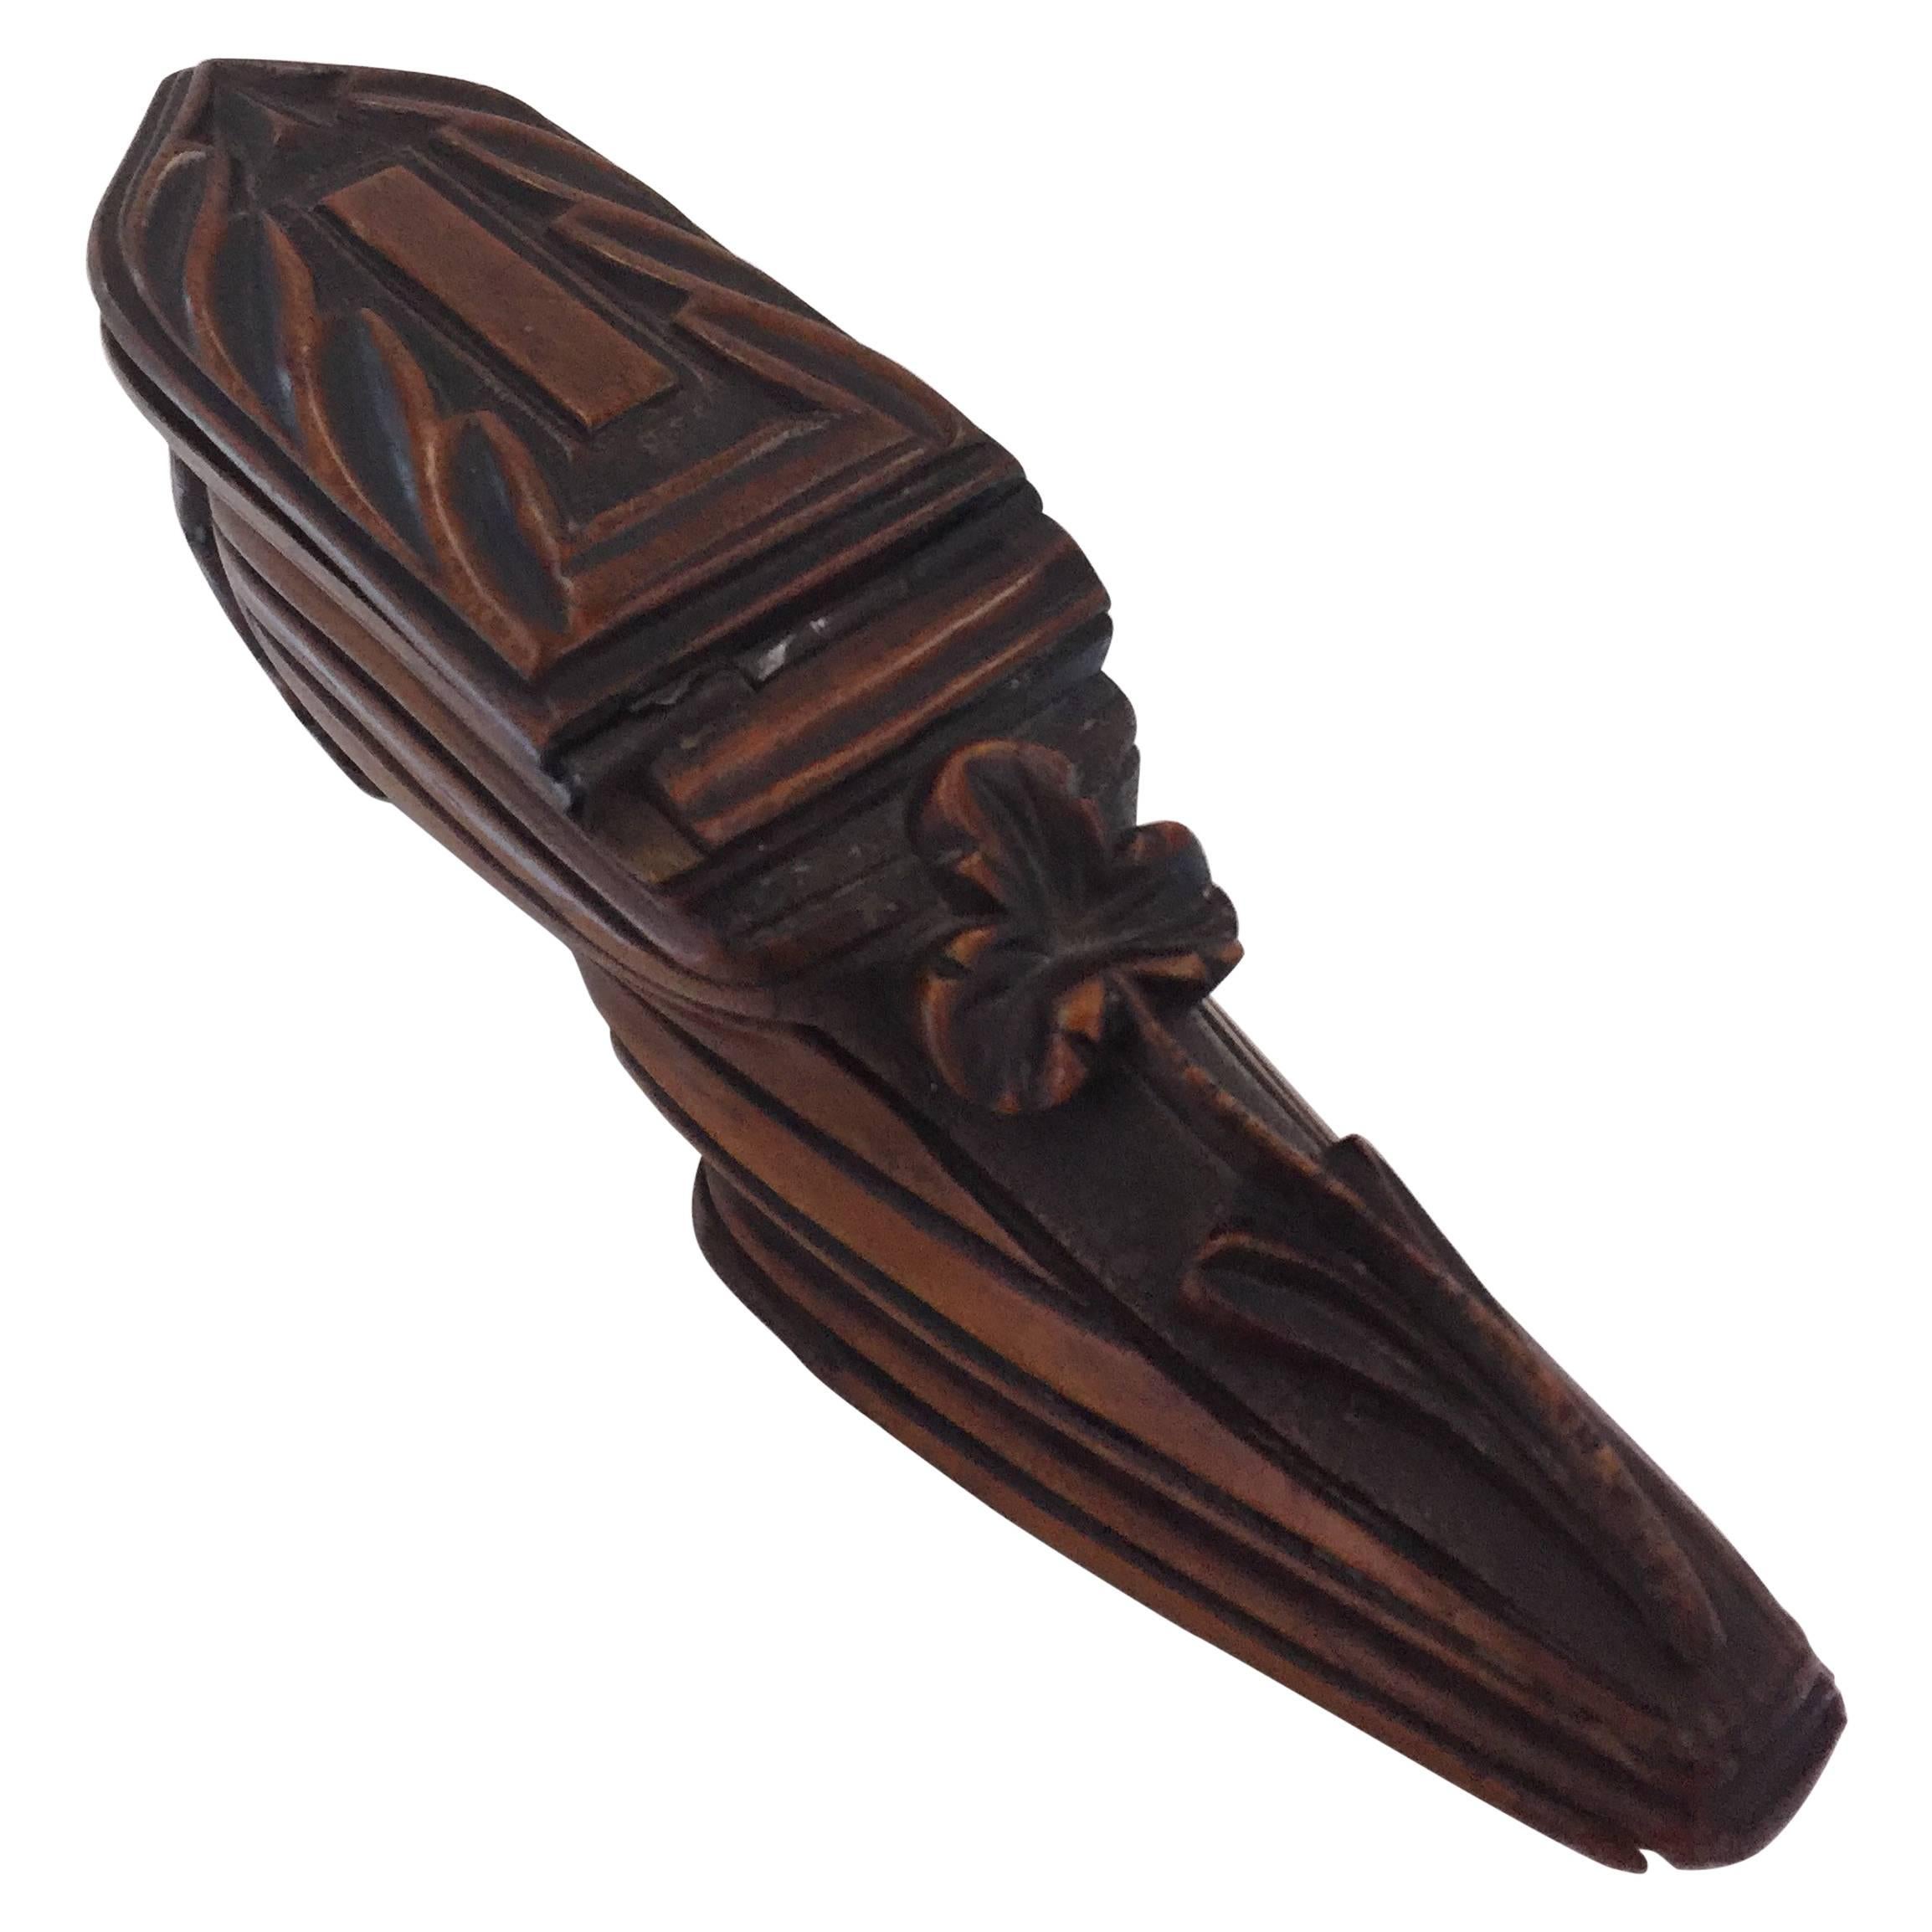 Geschnitzte Schnupftabakdose in Schuhform mit geschnitztem Schamrock, 19. Jahrhundert